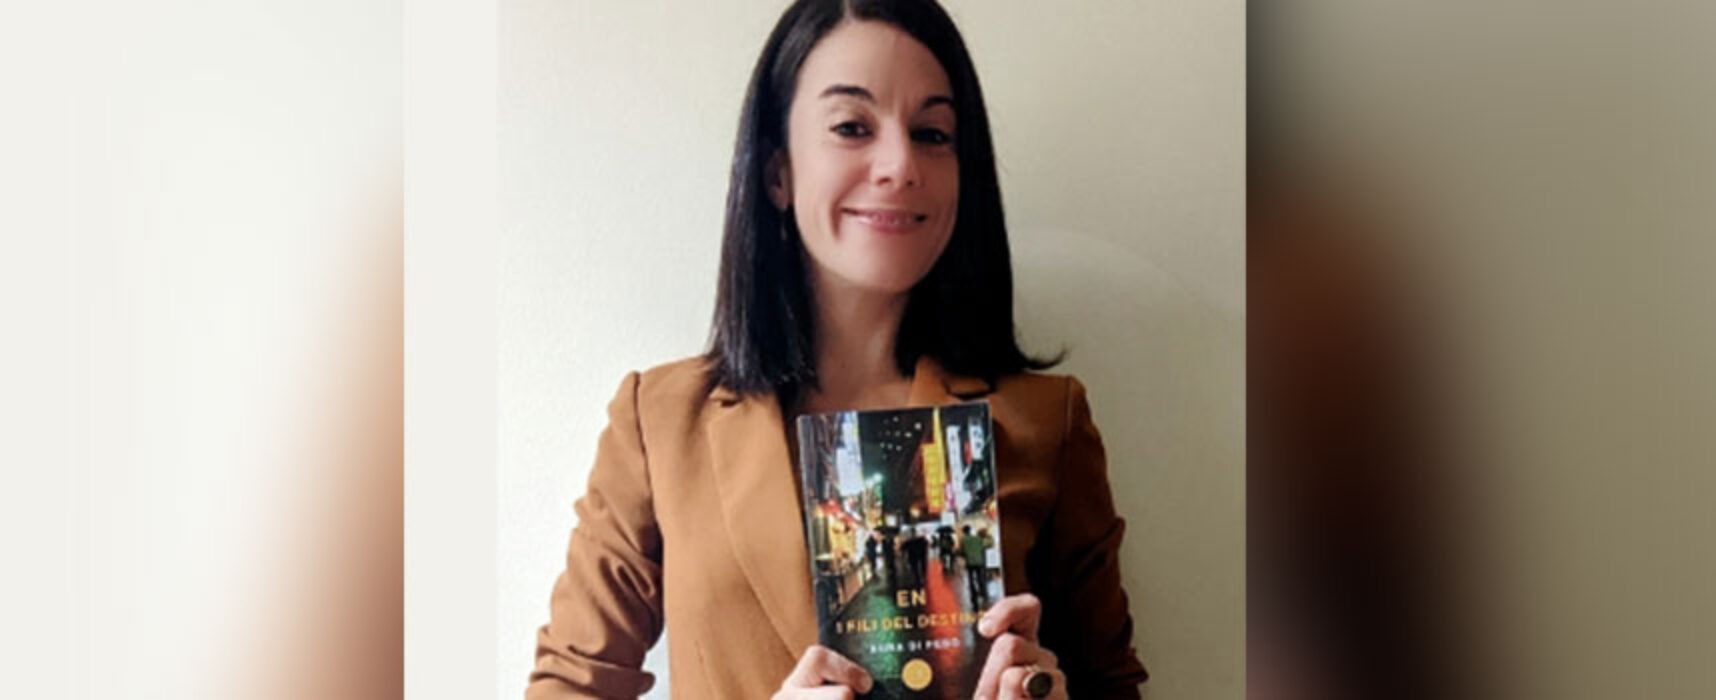 Aura Di Febo a Bisceglie per il suo esordio letterario presenta “En I fili del destino”